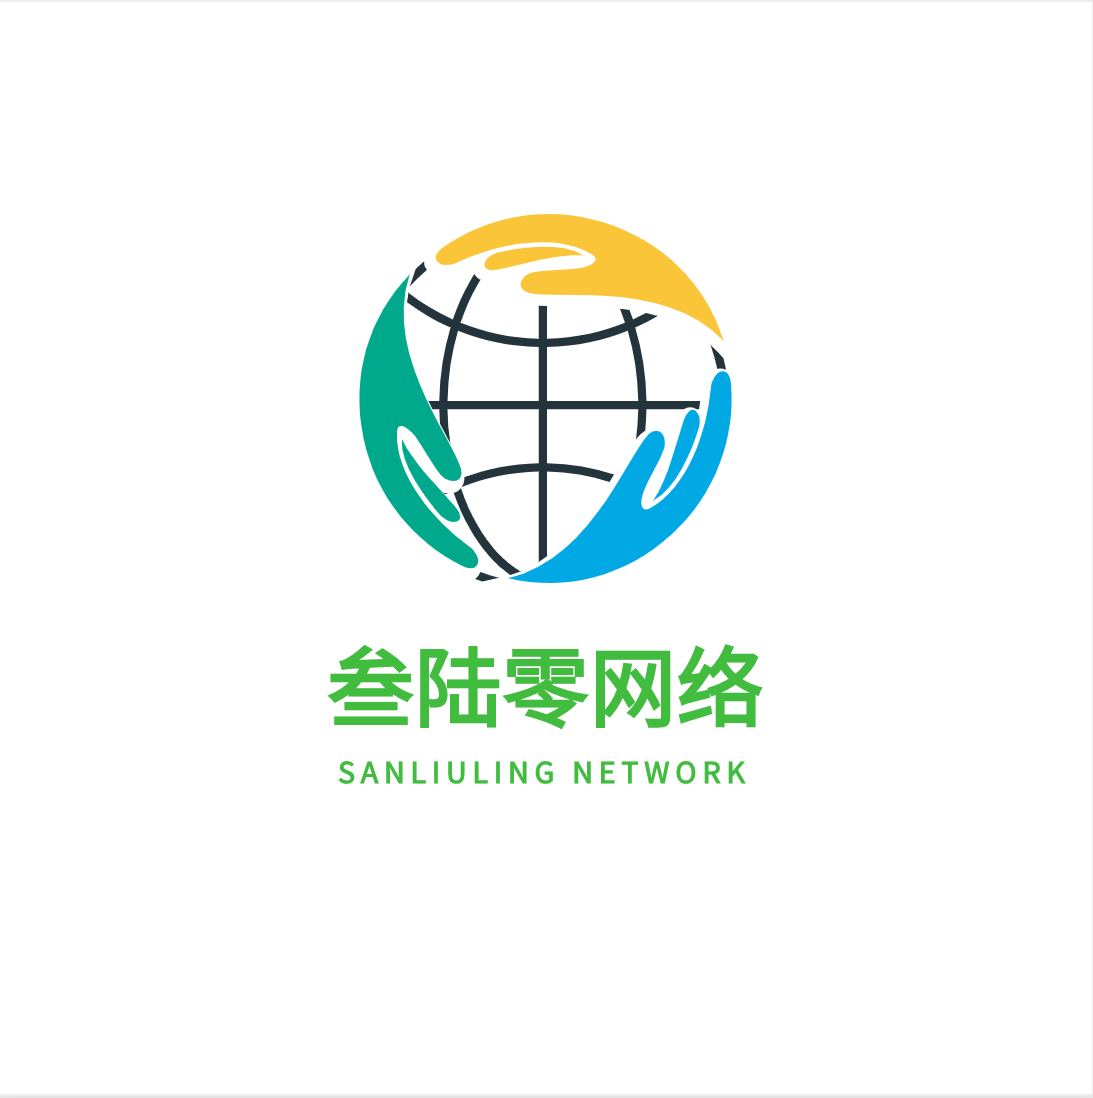 惠州市叁陆零网络科技有限公司